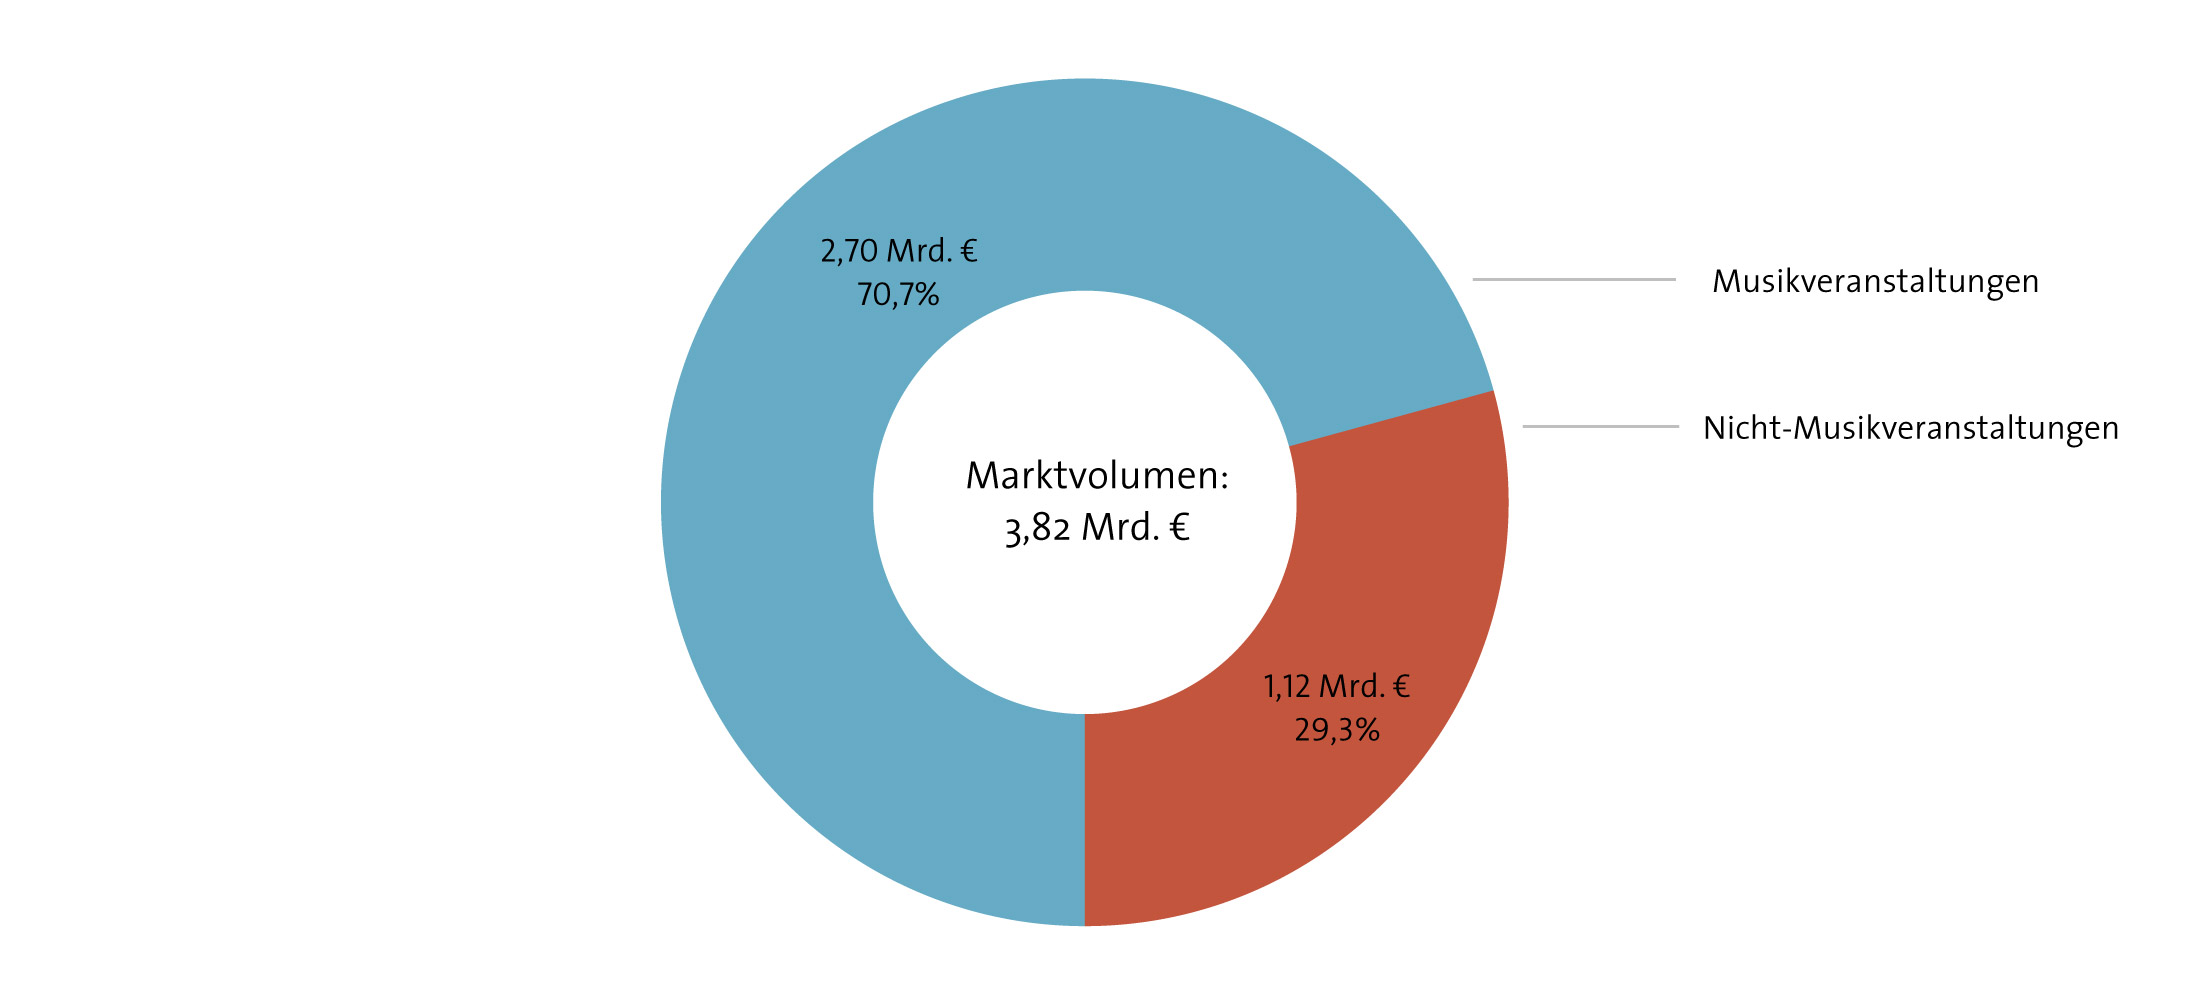 Abbildung: Umsatzverteilung des Veranstaltungsmarkts 2013